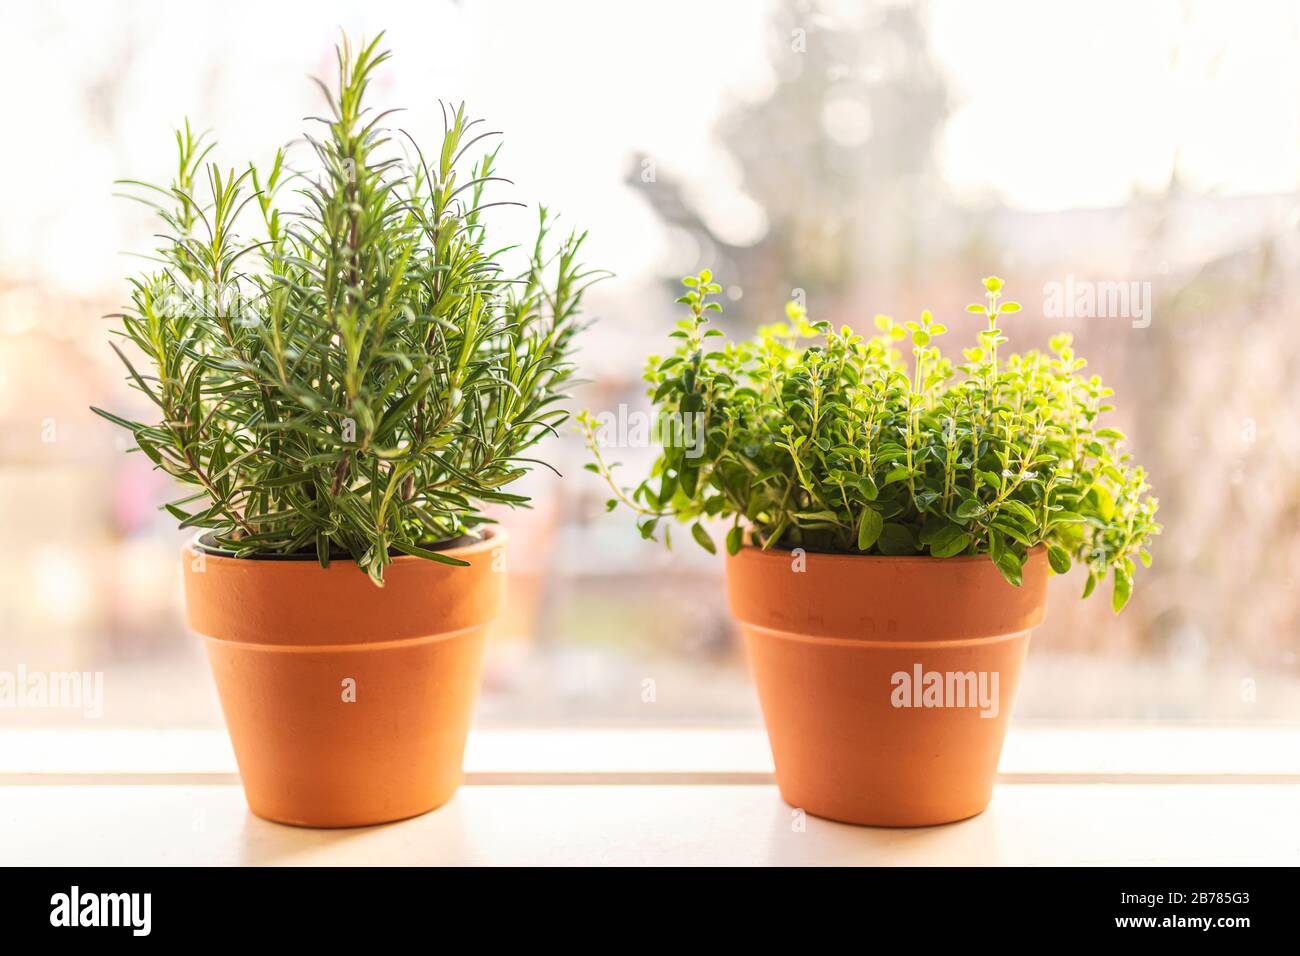 Due pentole di terracotta con erbe biologiche locali fresche in un davanzale nella prima primavera. Uno è rosmarino e l'altro è con origano. Foto Stock